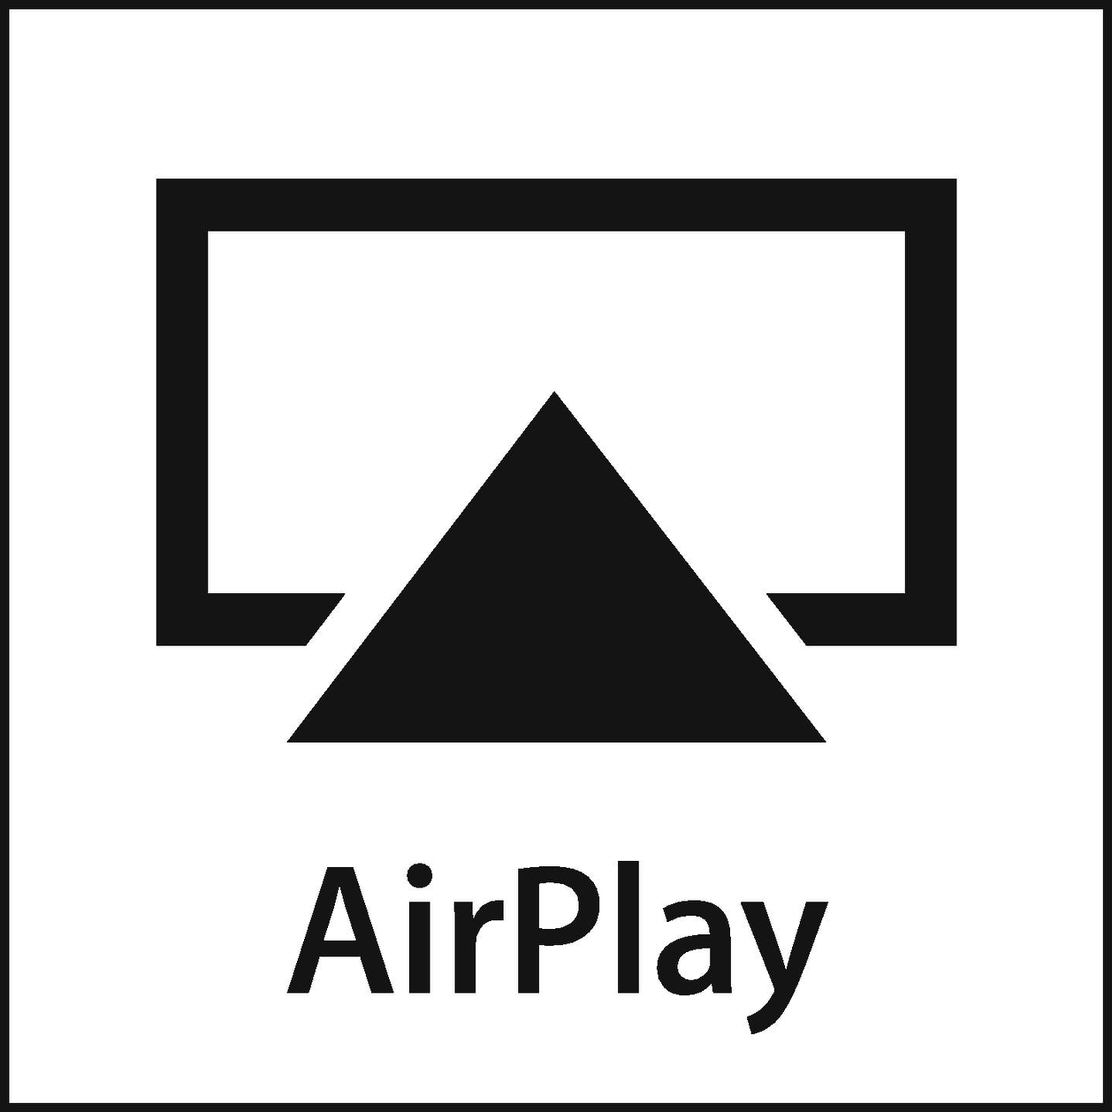 Air Play